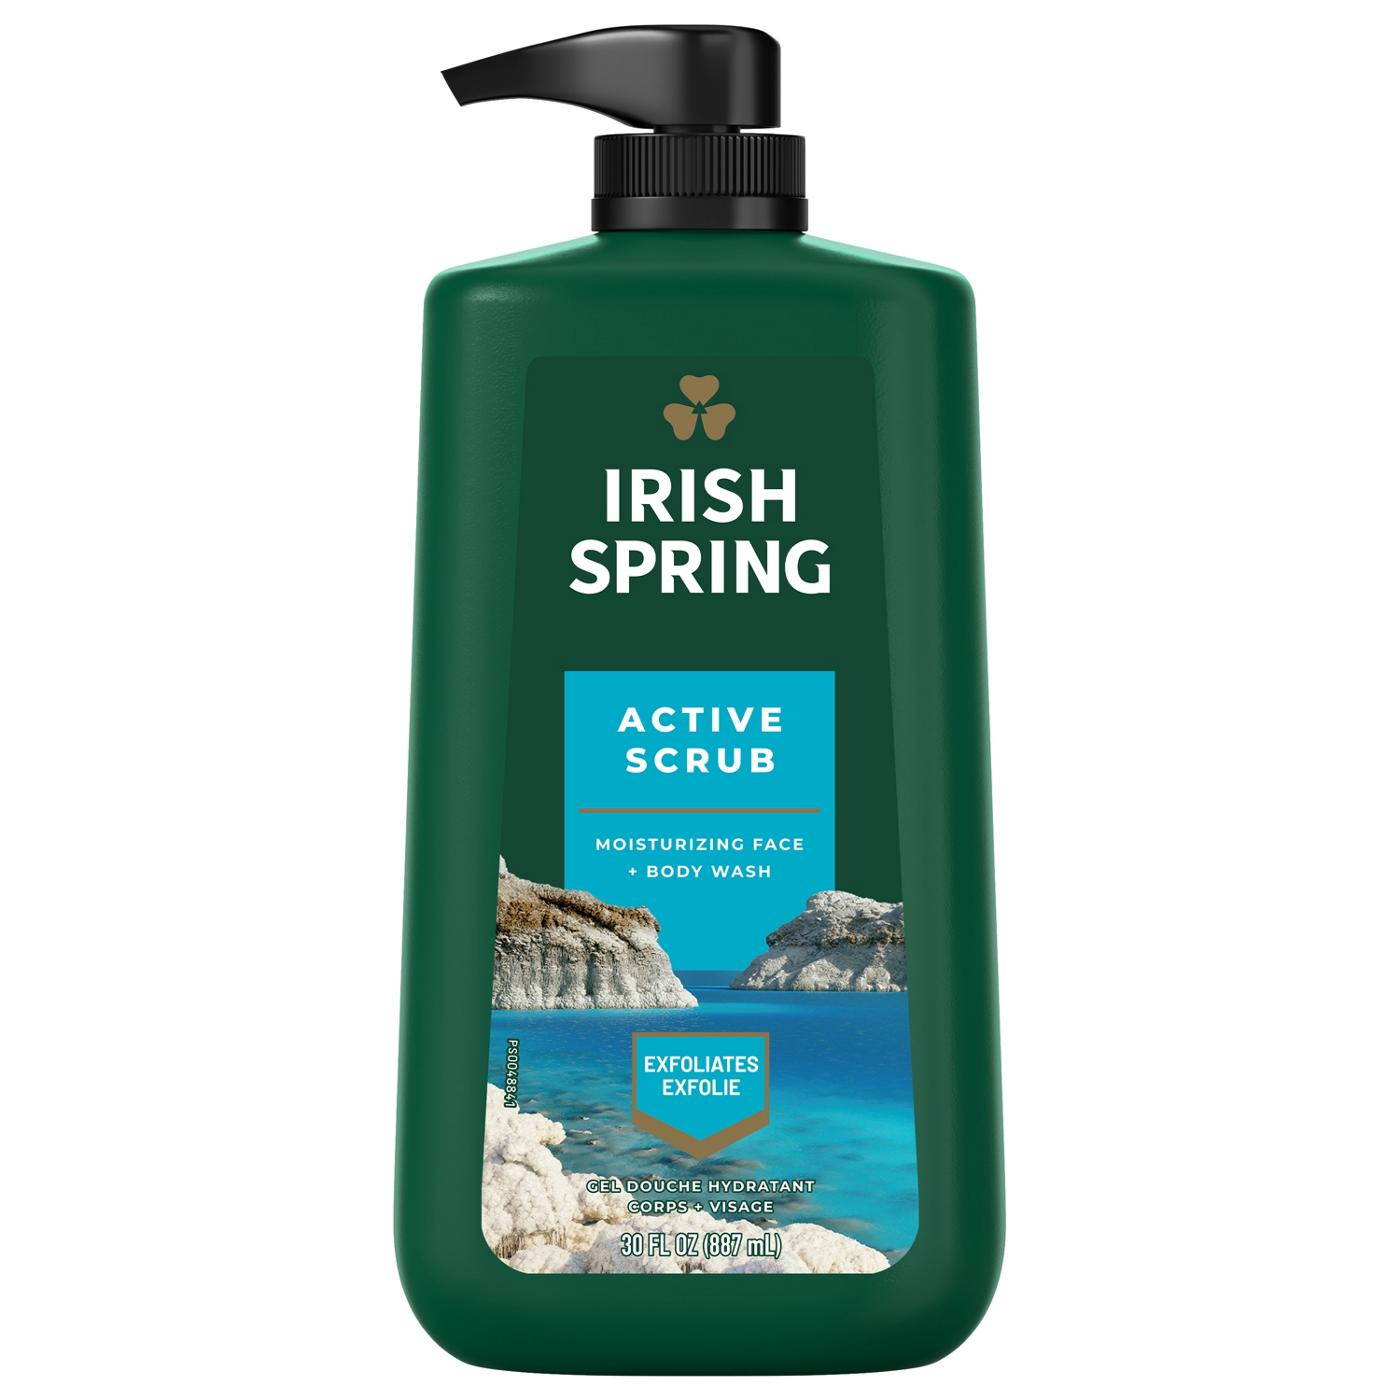 Irish Spring Moisturizing Face + Body Wash - Active Scrub; image 1 of 2